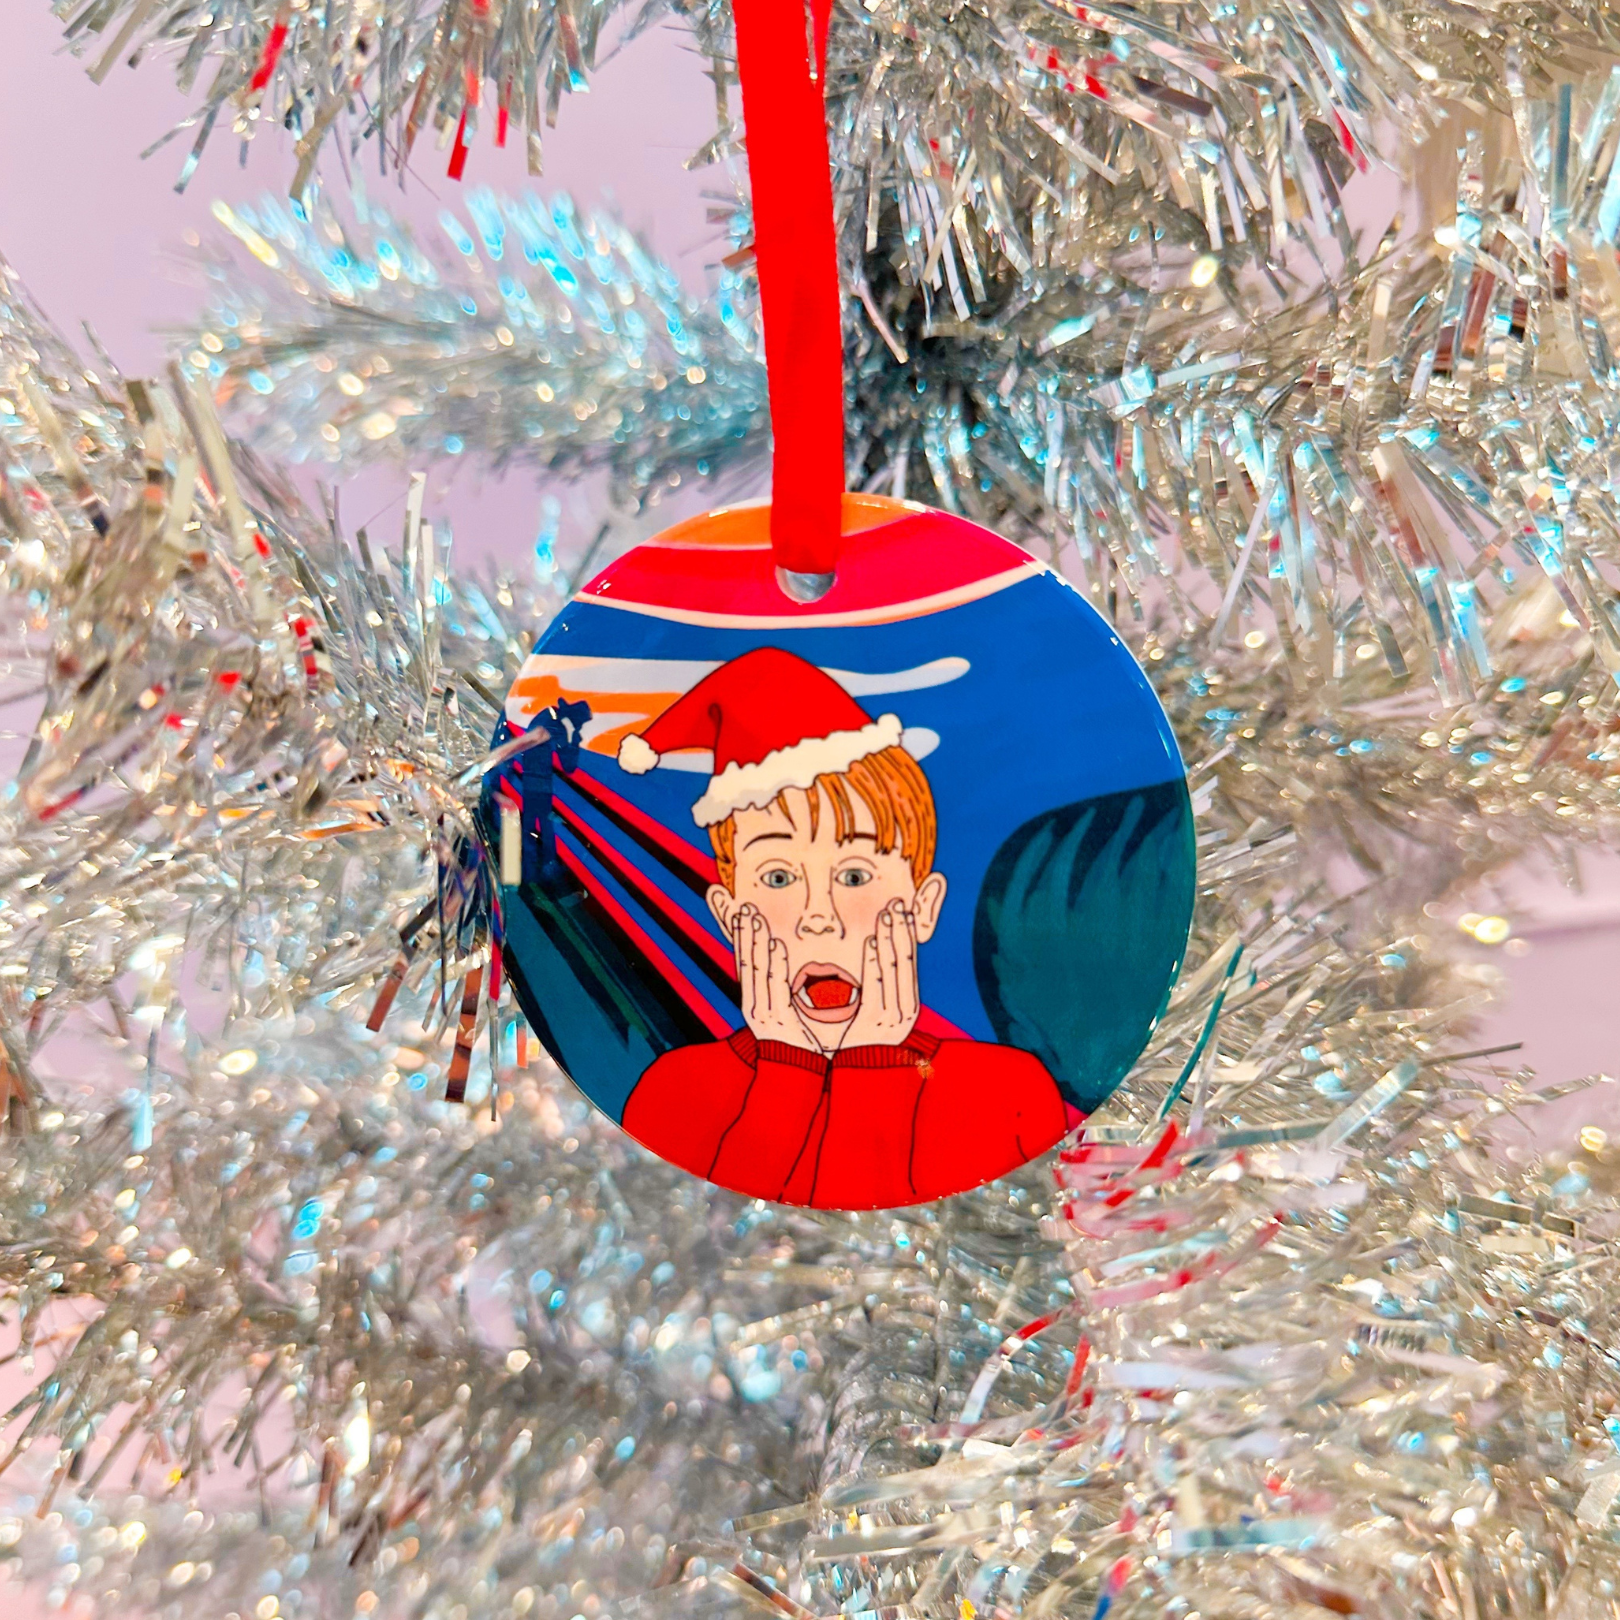 Home Scream Holiday Ornament